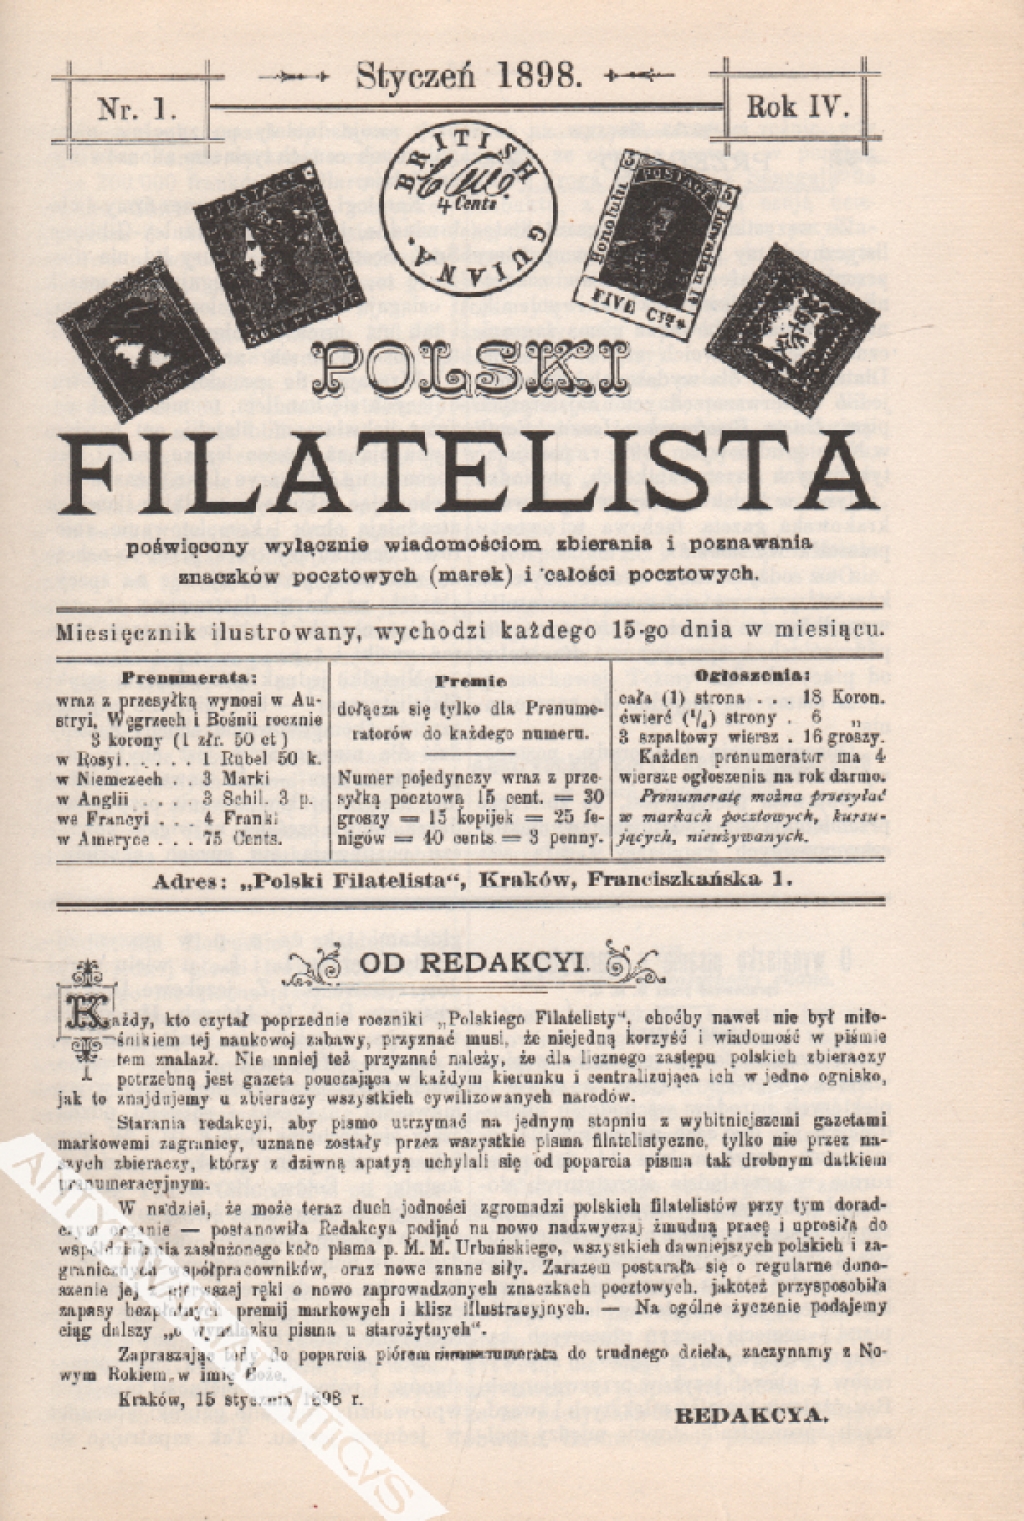 Polski Filatelista. Miesięcznik ilustrowany. Roczniki 1898, 1899  [reprint]